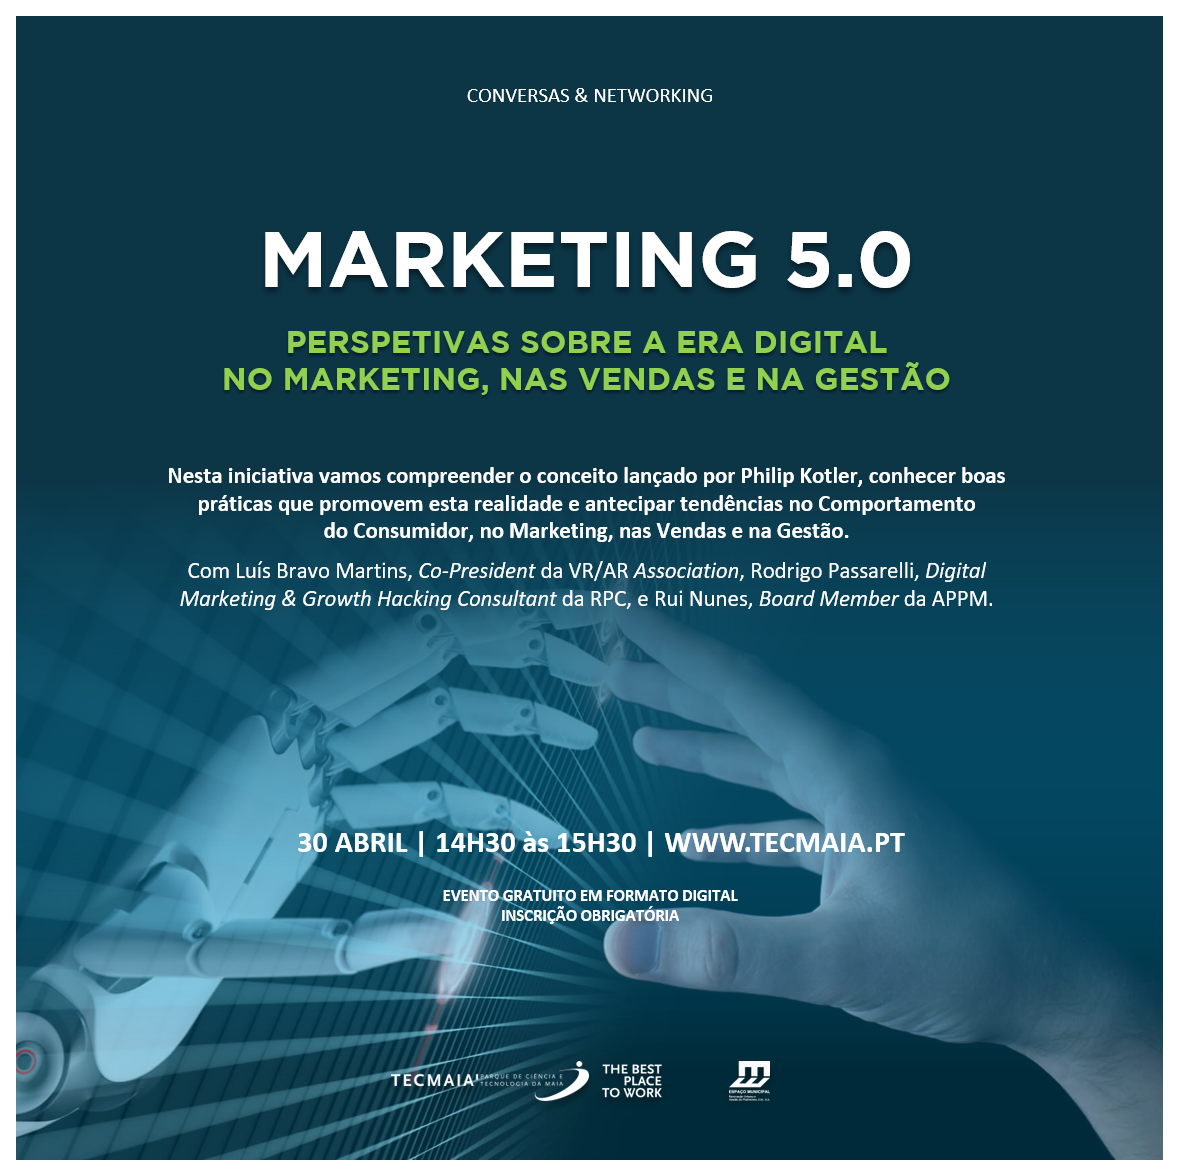 Marketing 5.0 - Perspetivas sobre a era digital no Marketing, nas Vendas e na Gestão